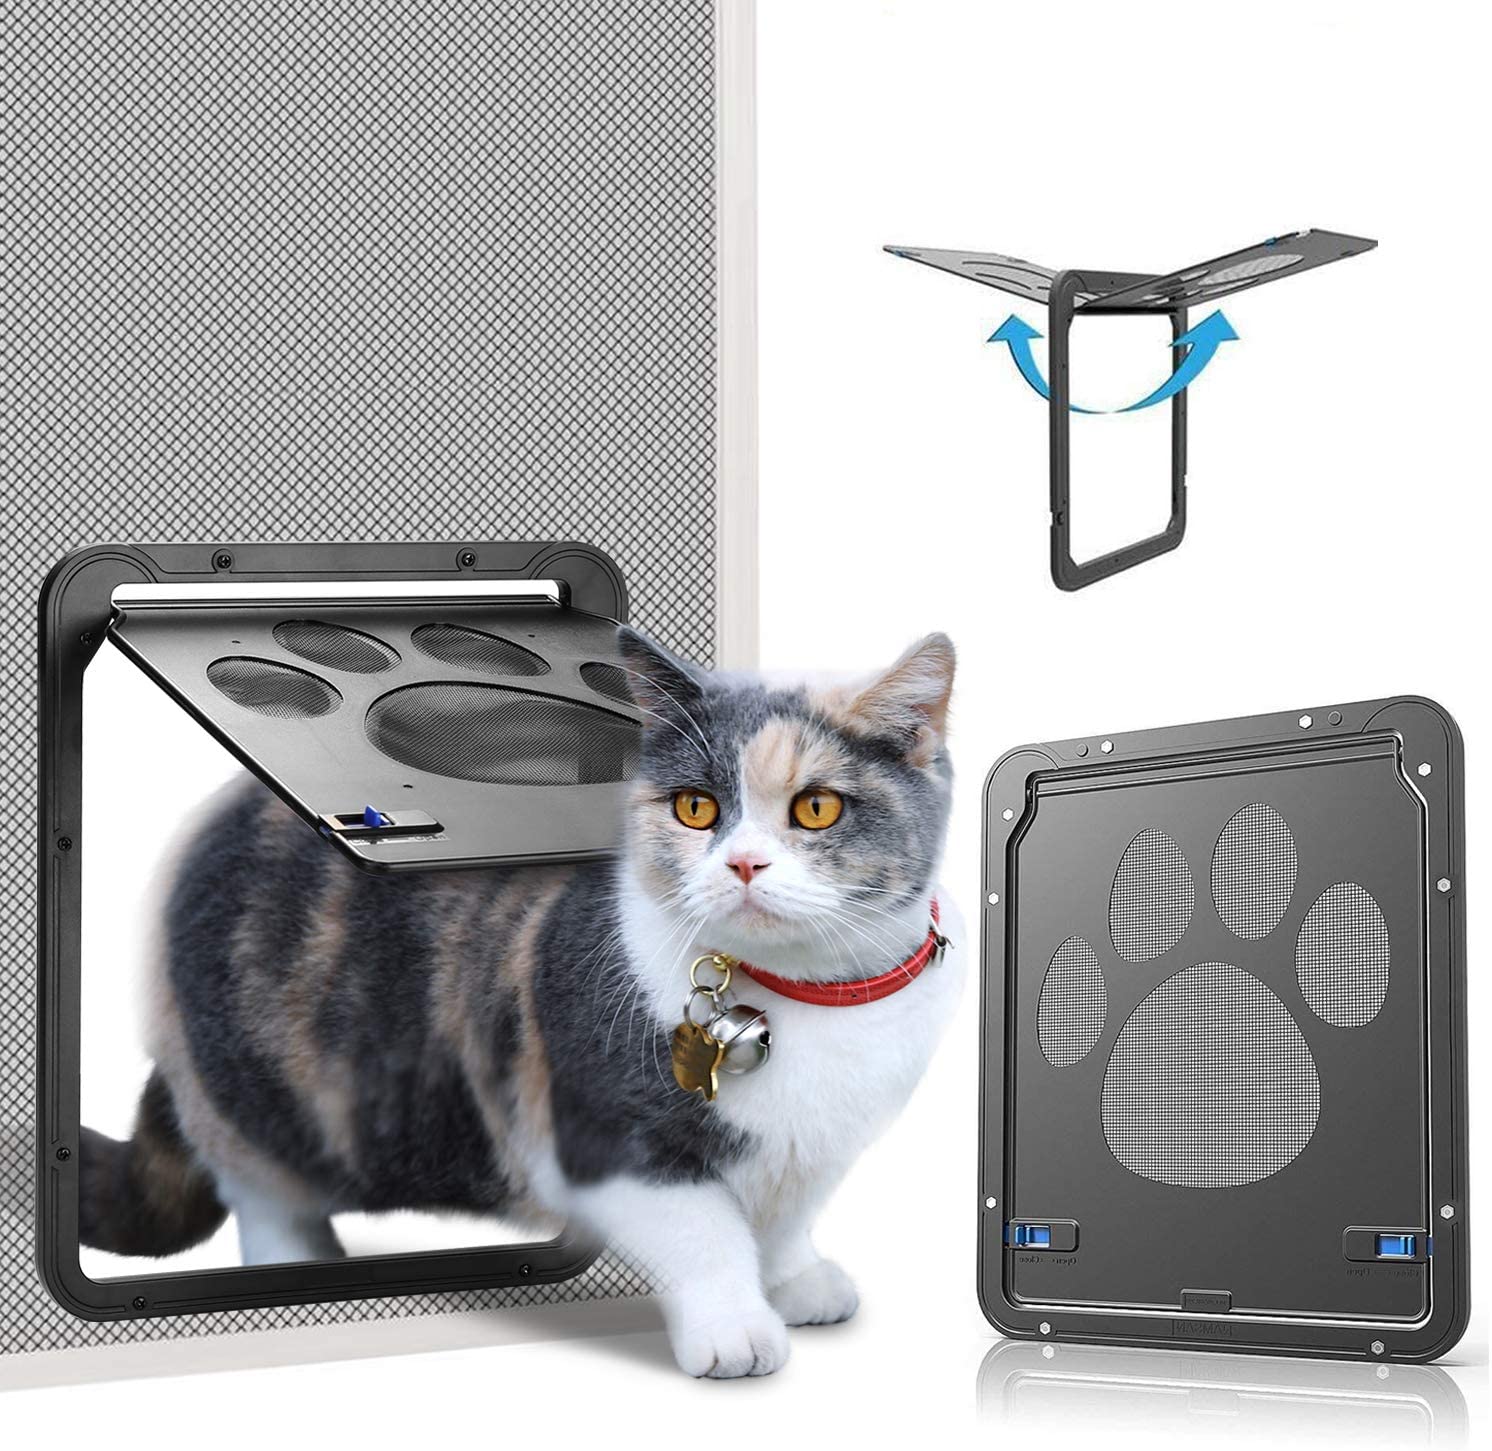  Ownpets Puerta para Perros y Gatos Puerta Mosquitera para Mascotas Gatera de Gatos con Cerradura Automática Puerta Magnética con Malla para Perros Pequeños 